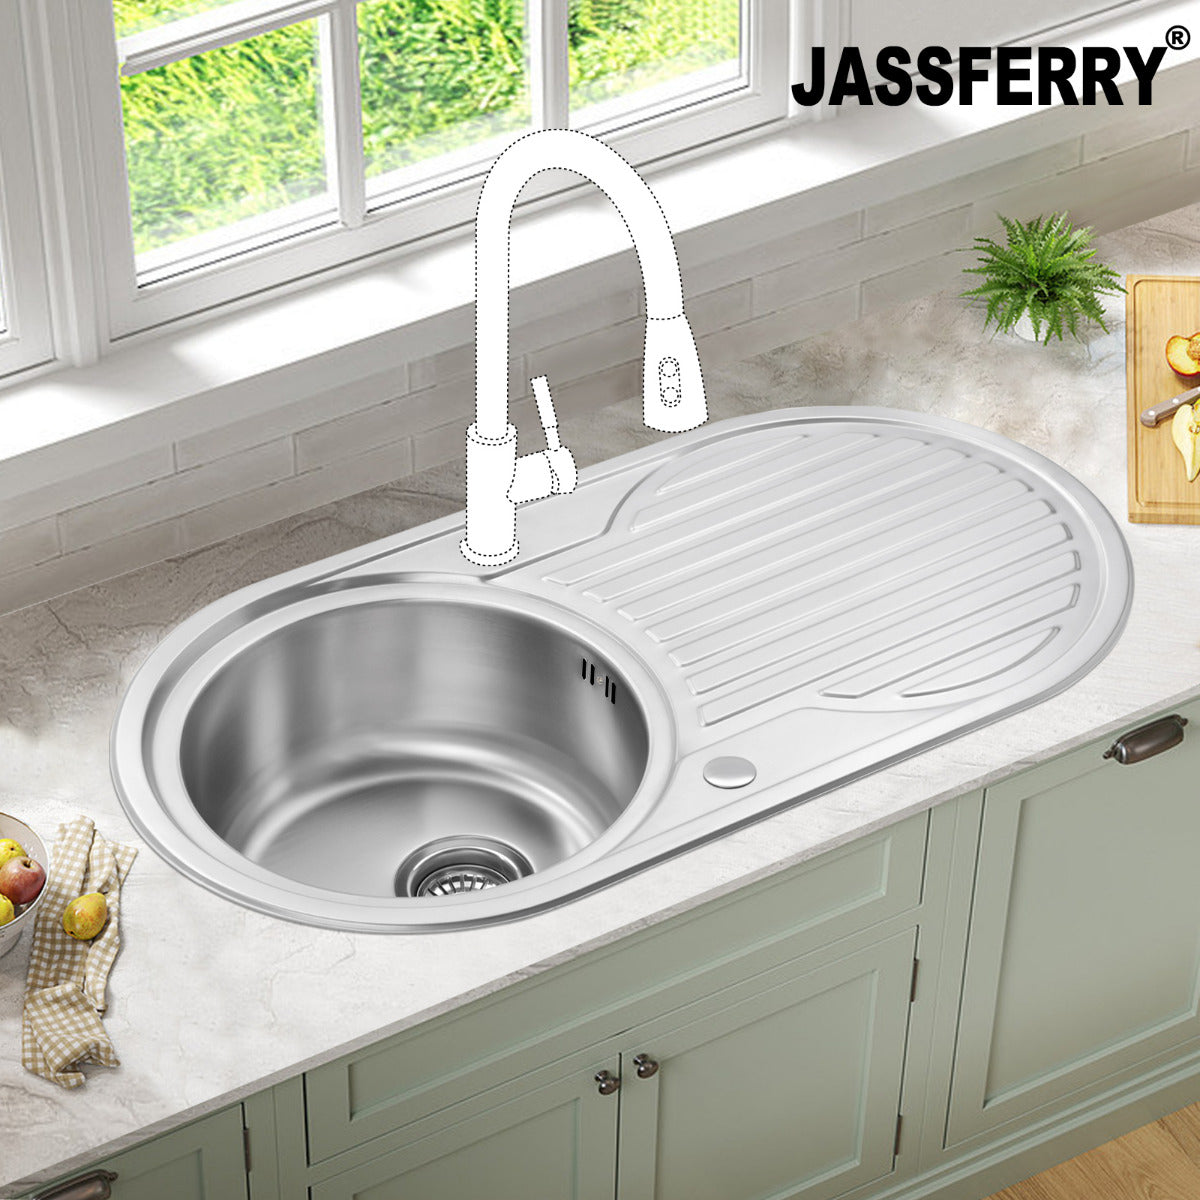 JassferryJASSFERRY Kitchen Sink Stainless Steel Single Circle Bowl Reversible Round DrainerKitchen Sinks